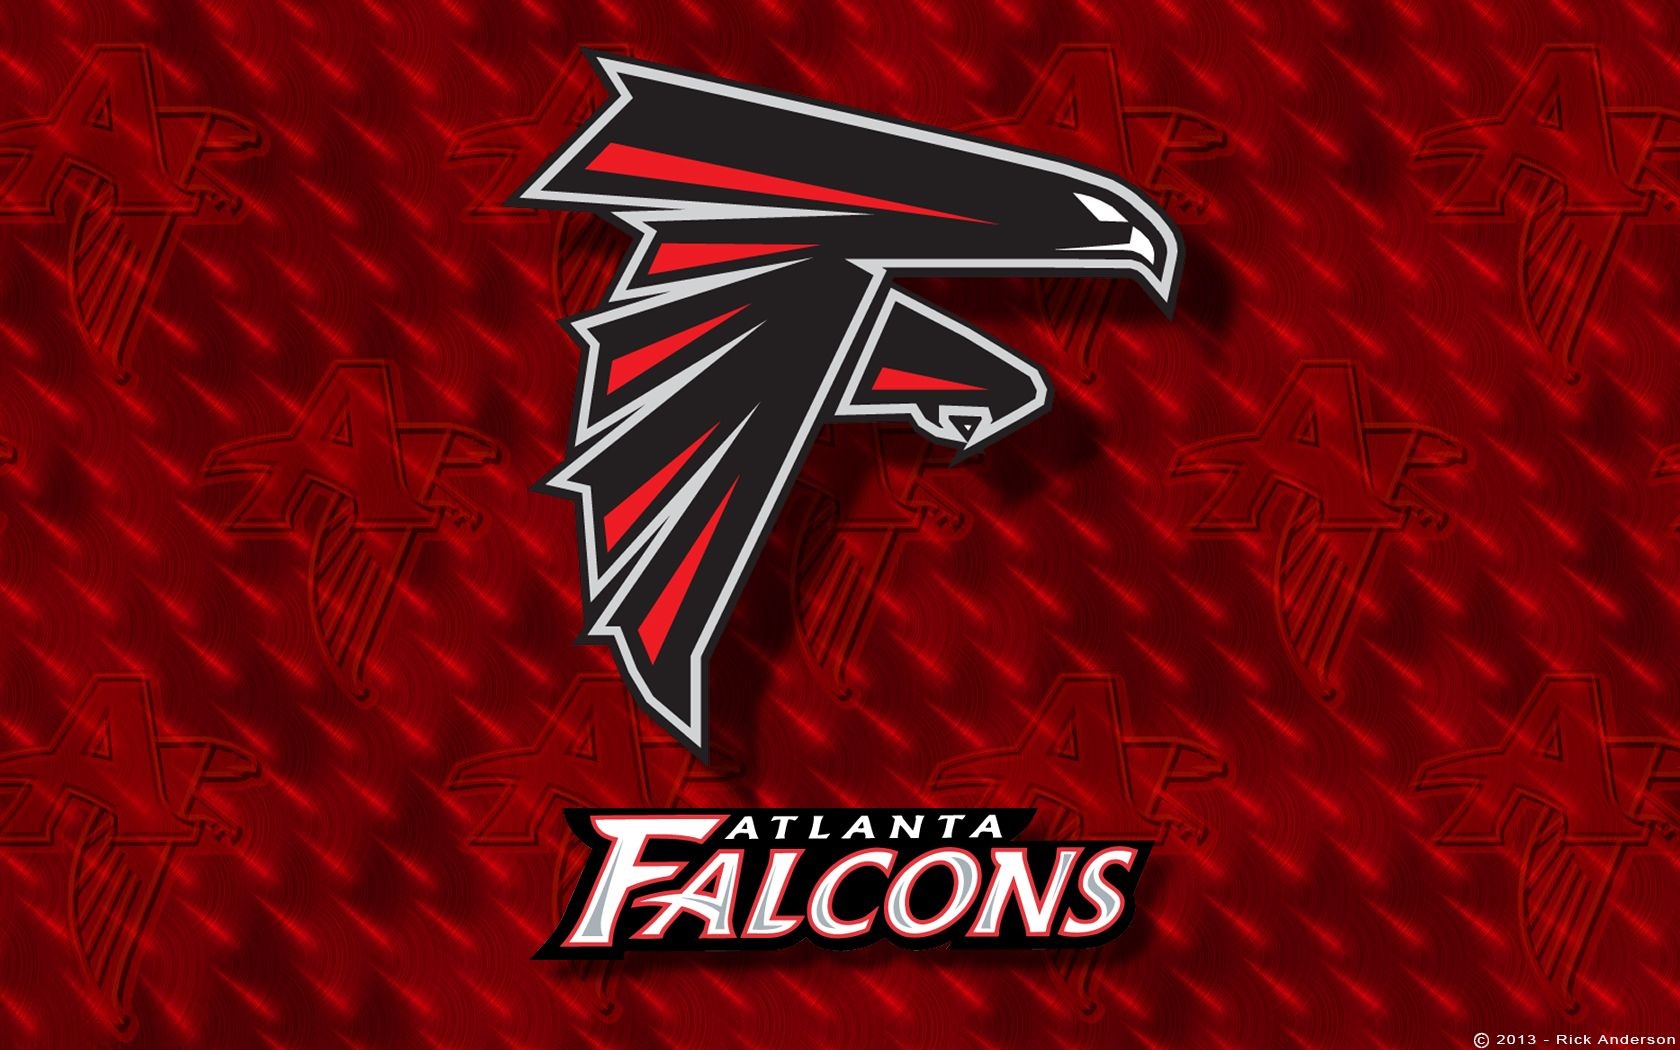 Atlanta Falcons Wallpapers High Quality  PixelsTalkNet